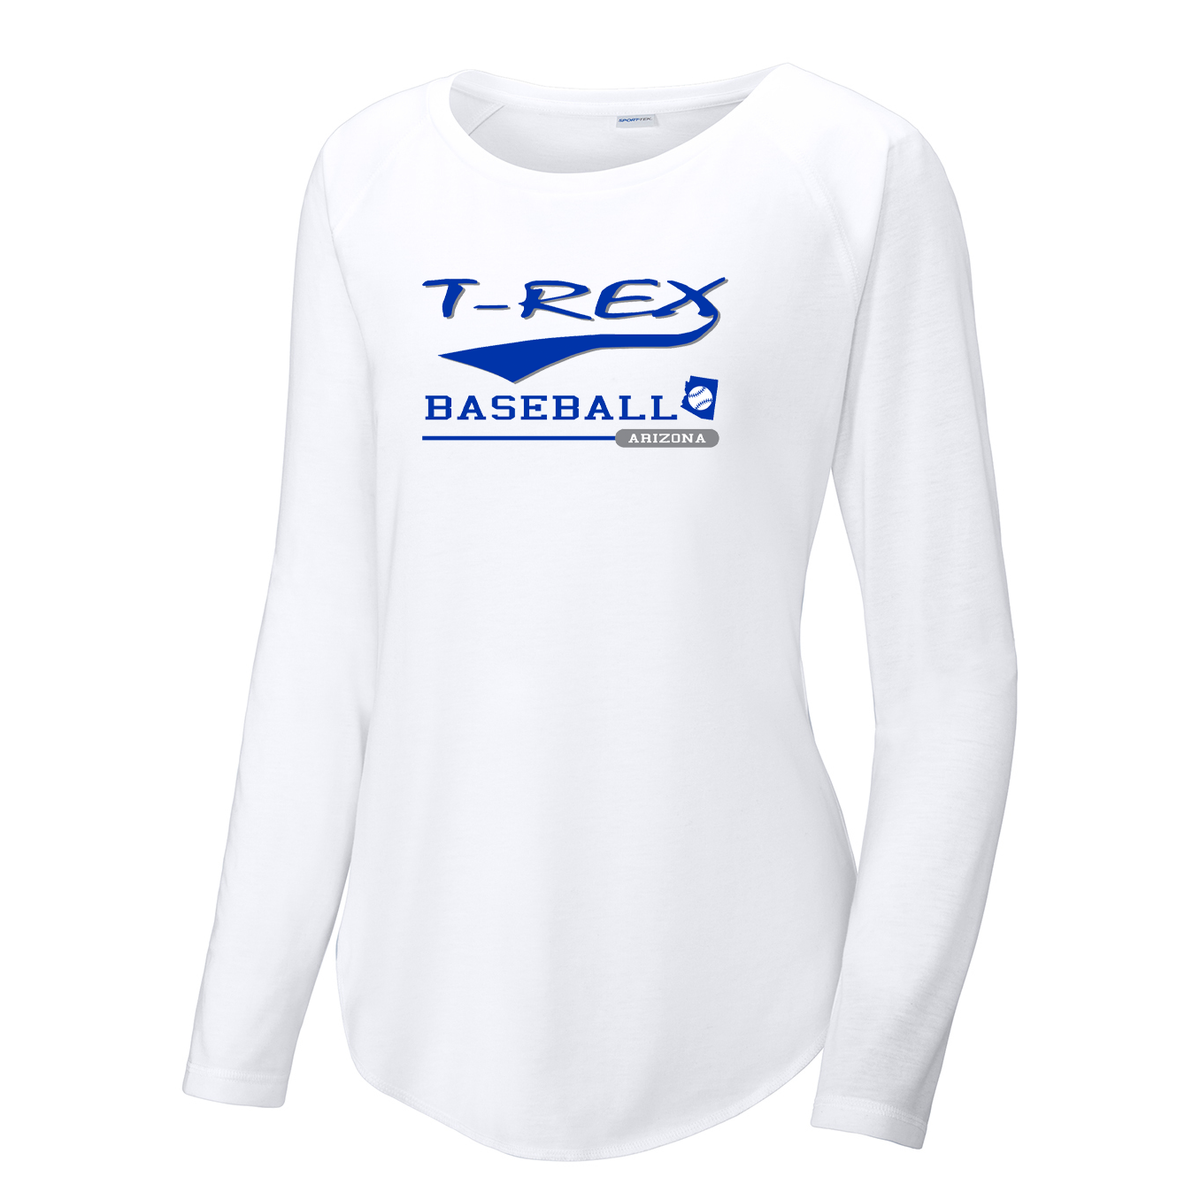 T-Rex Baseball Women's Raglan Long Sleeve CottonTouch